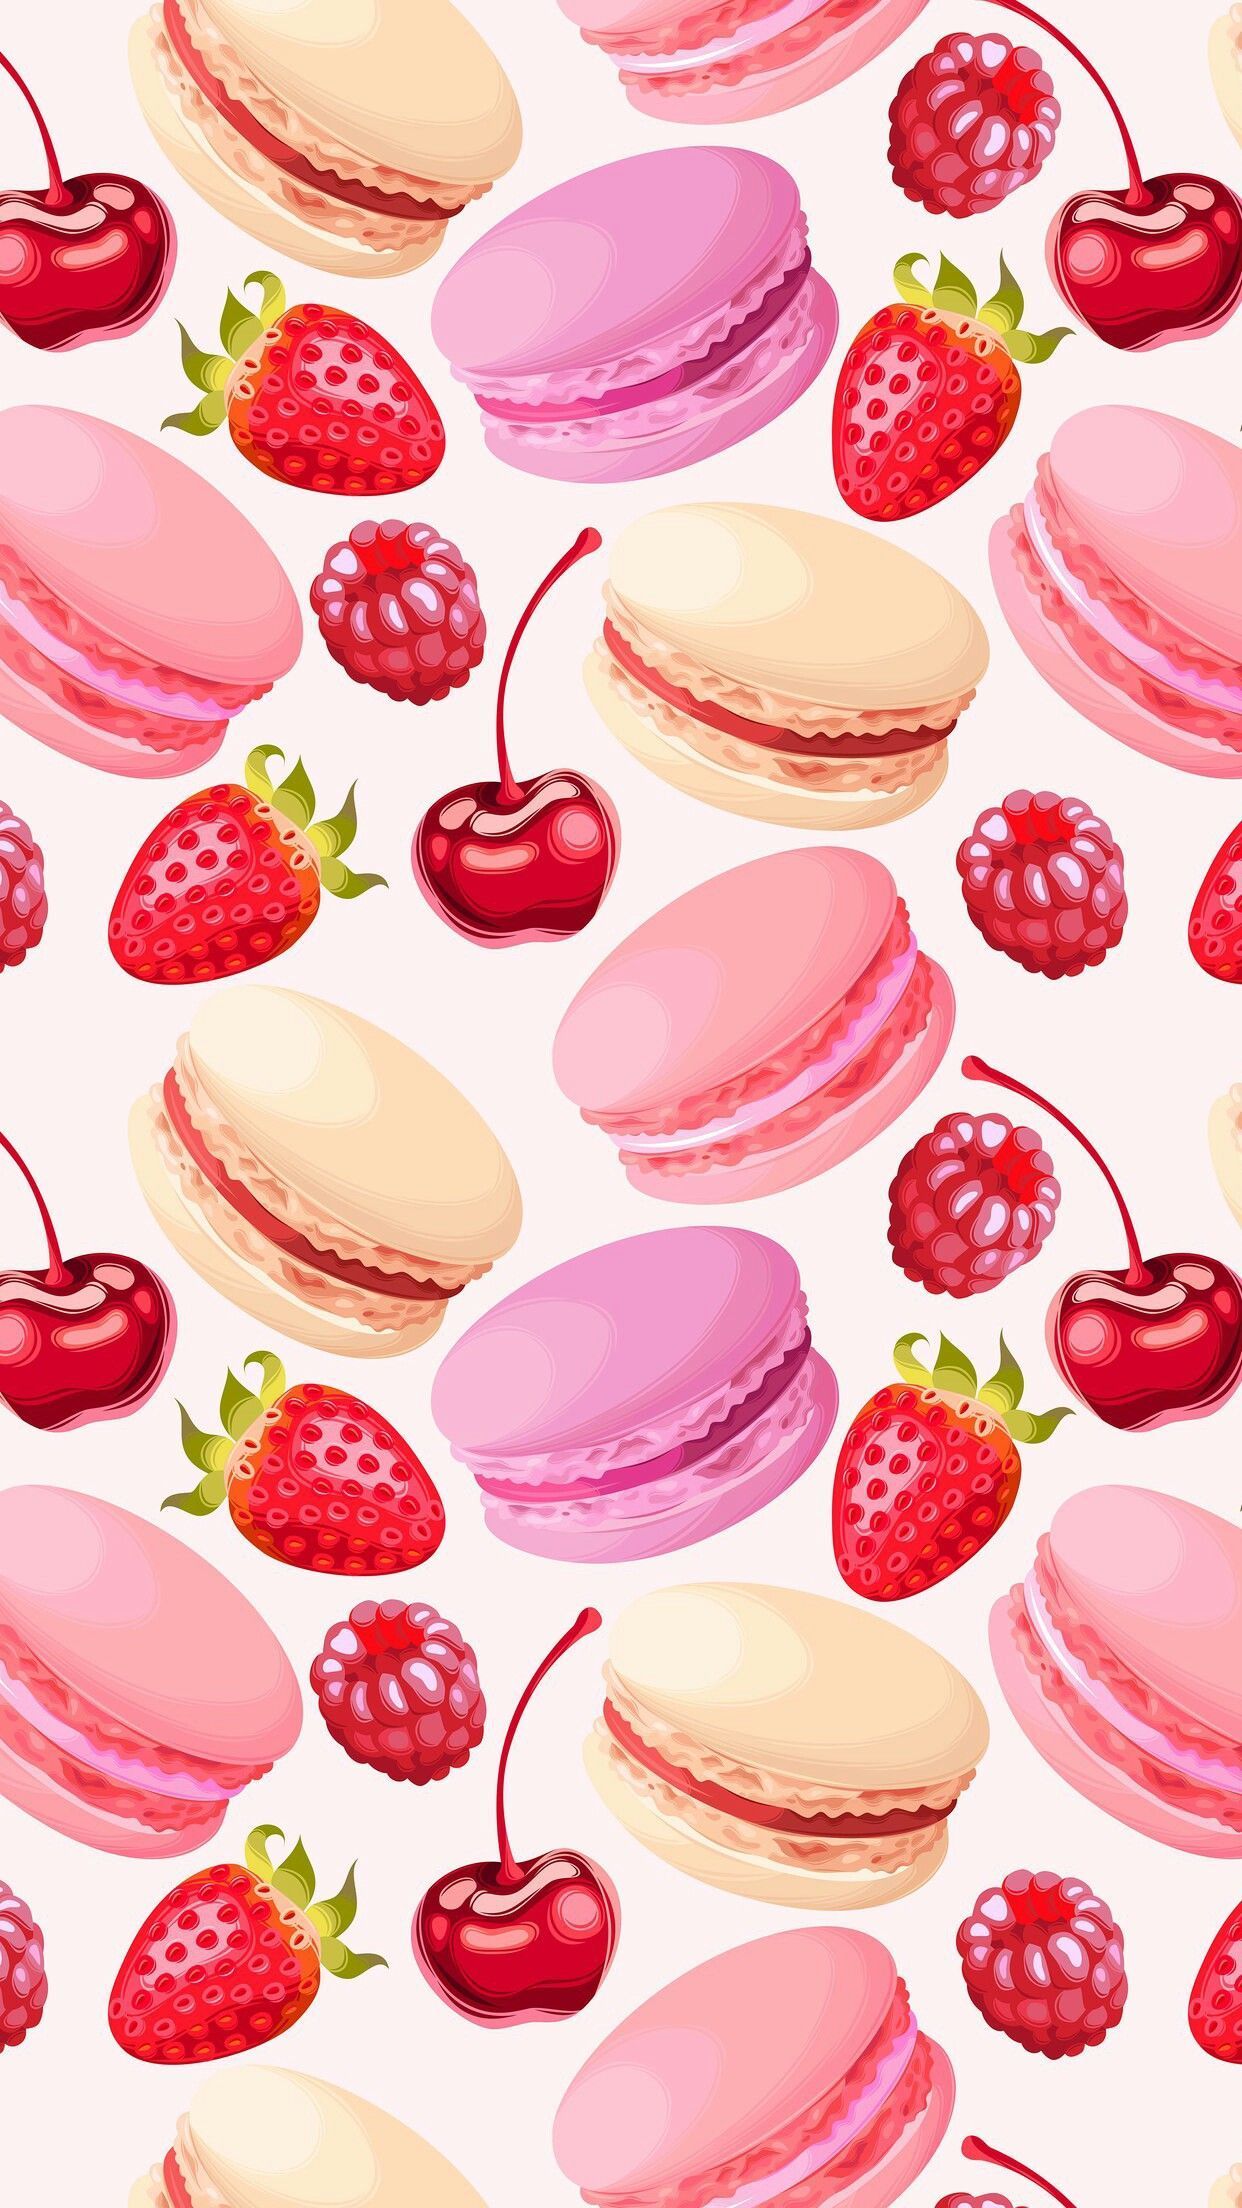 Download Fruit Wallpaper Background RoyaltyFree Stock Illustration Image   Pixabay